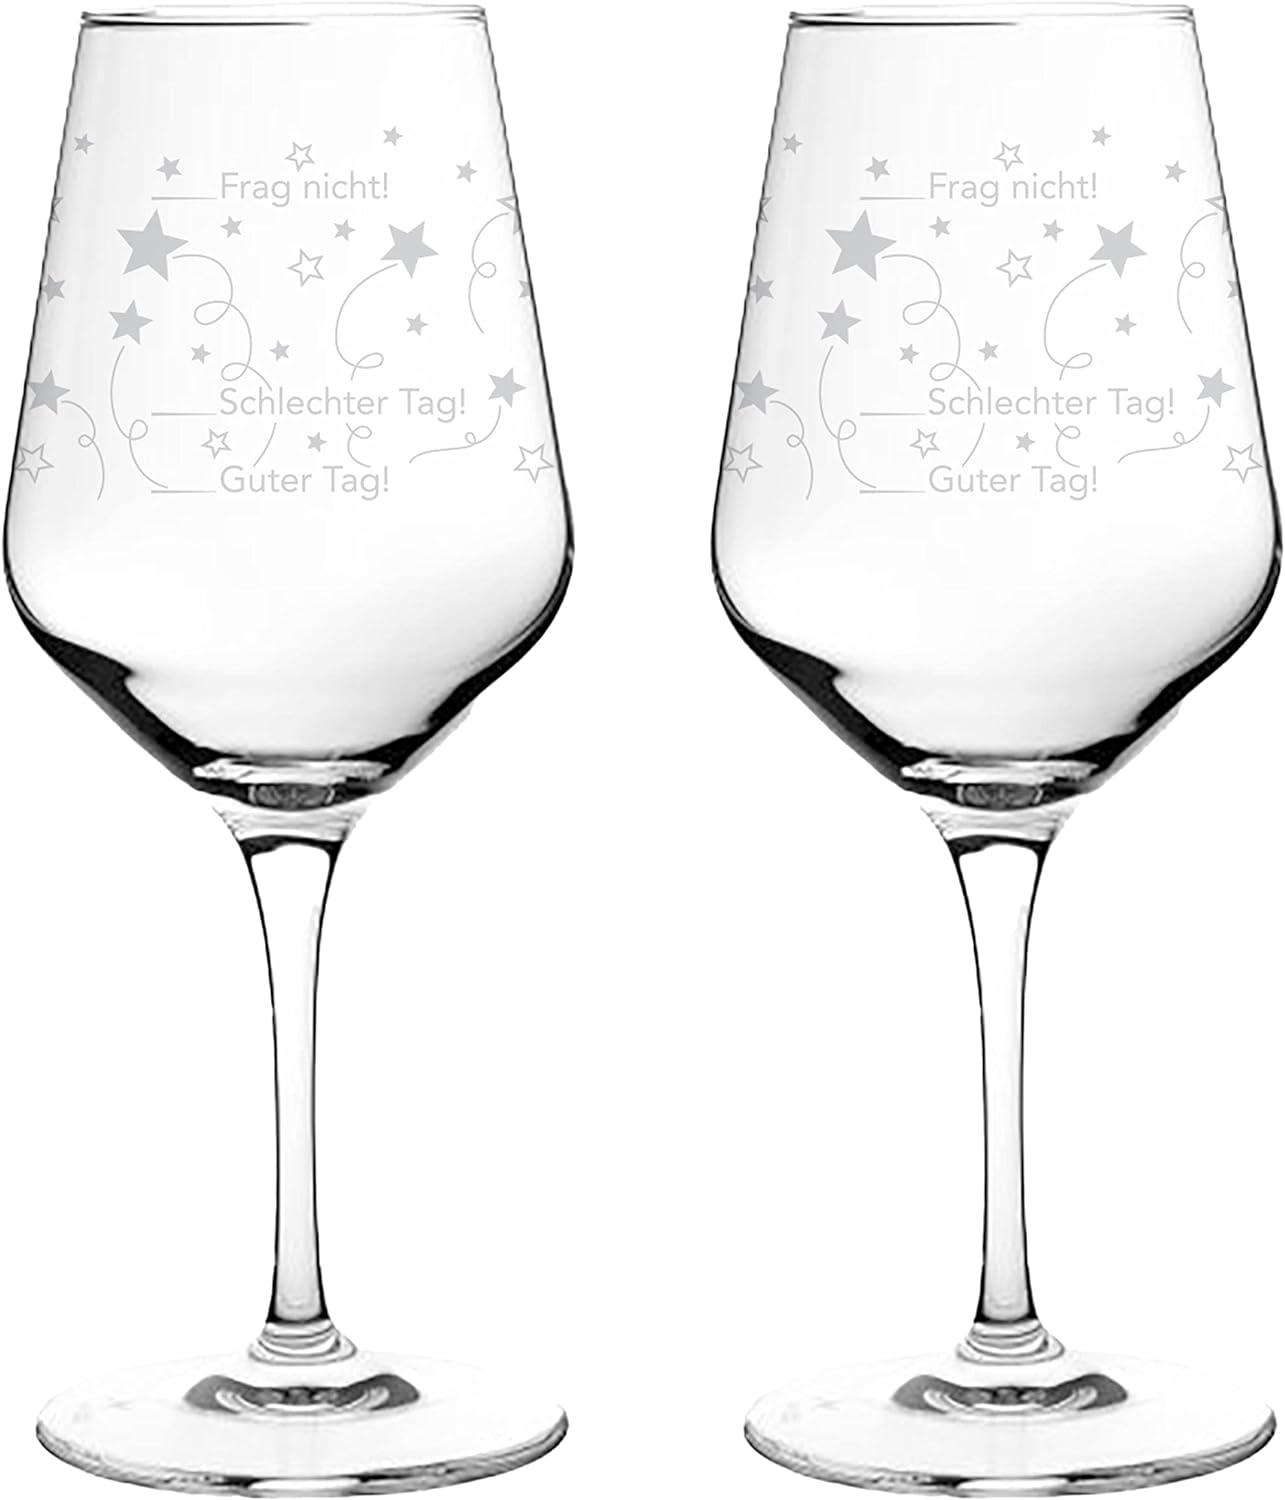 Kristall-Weinglas-550ml-Guter-Tag/Schlechter-Tag-inklusive-Geschenkbox-berlindeluxe-weinglas-fragnicht-weißer-hintergrund-zwei